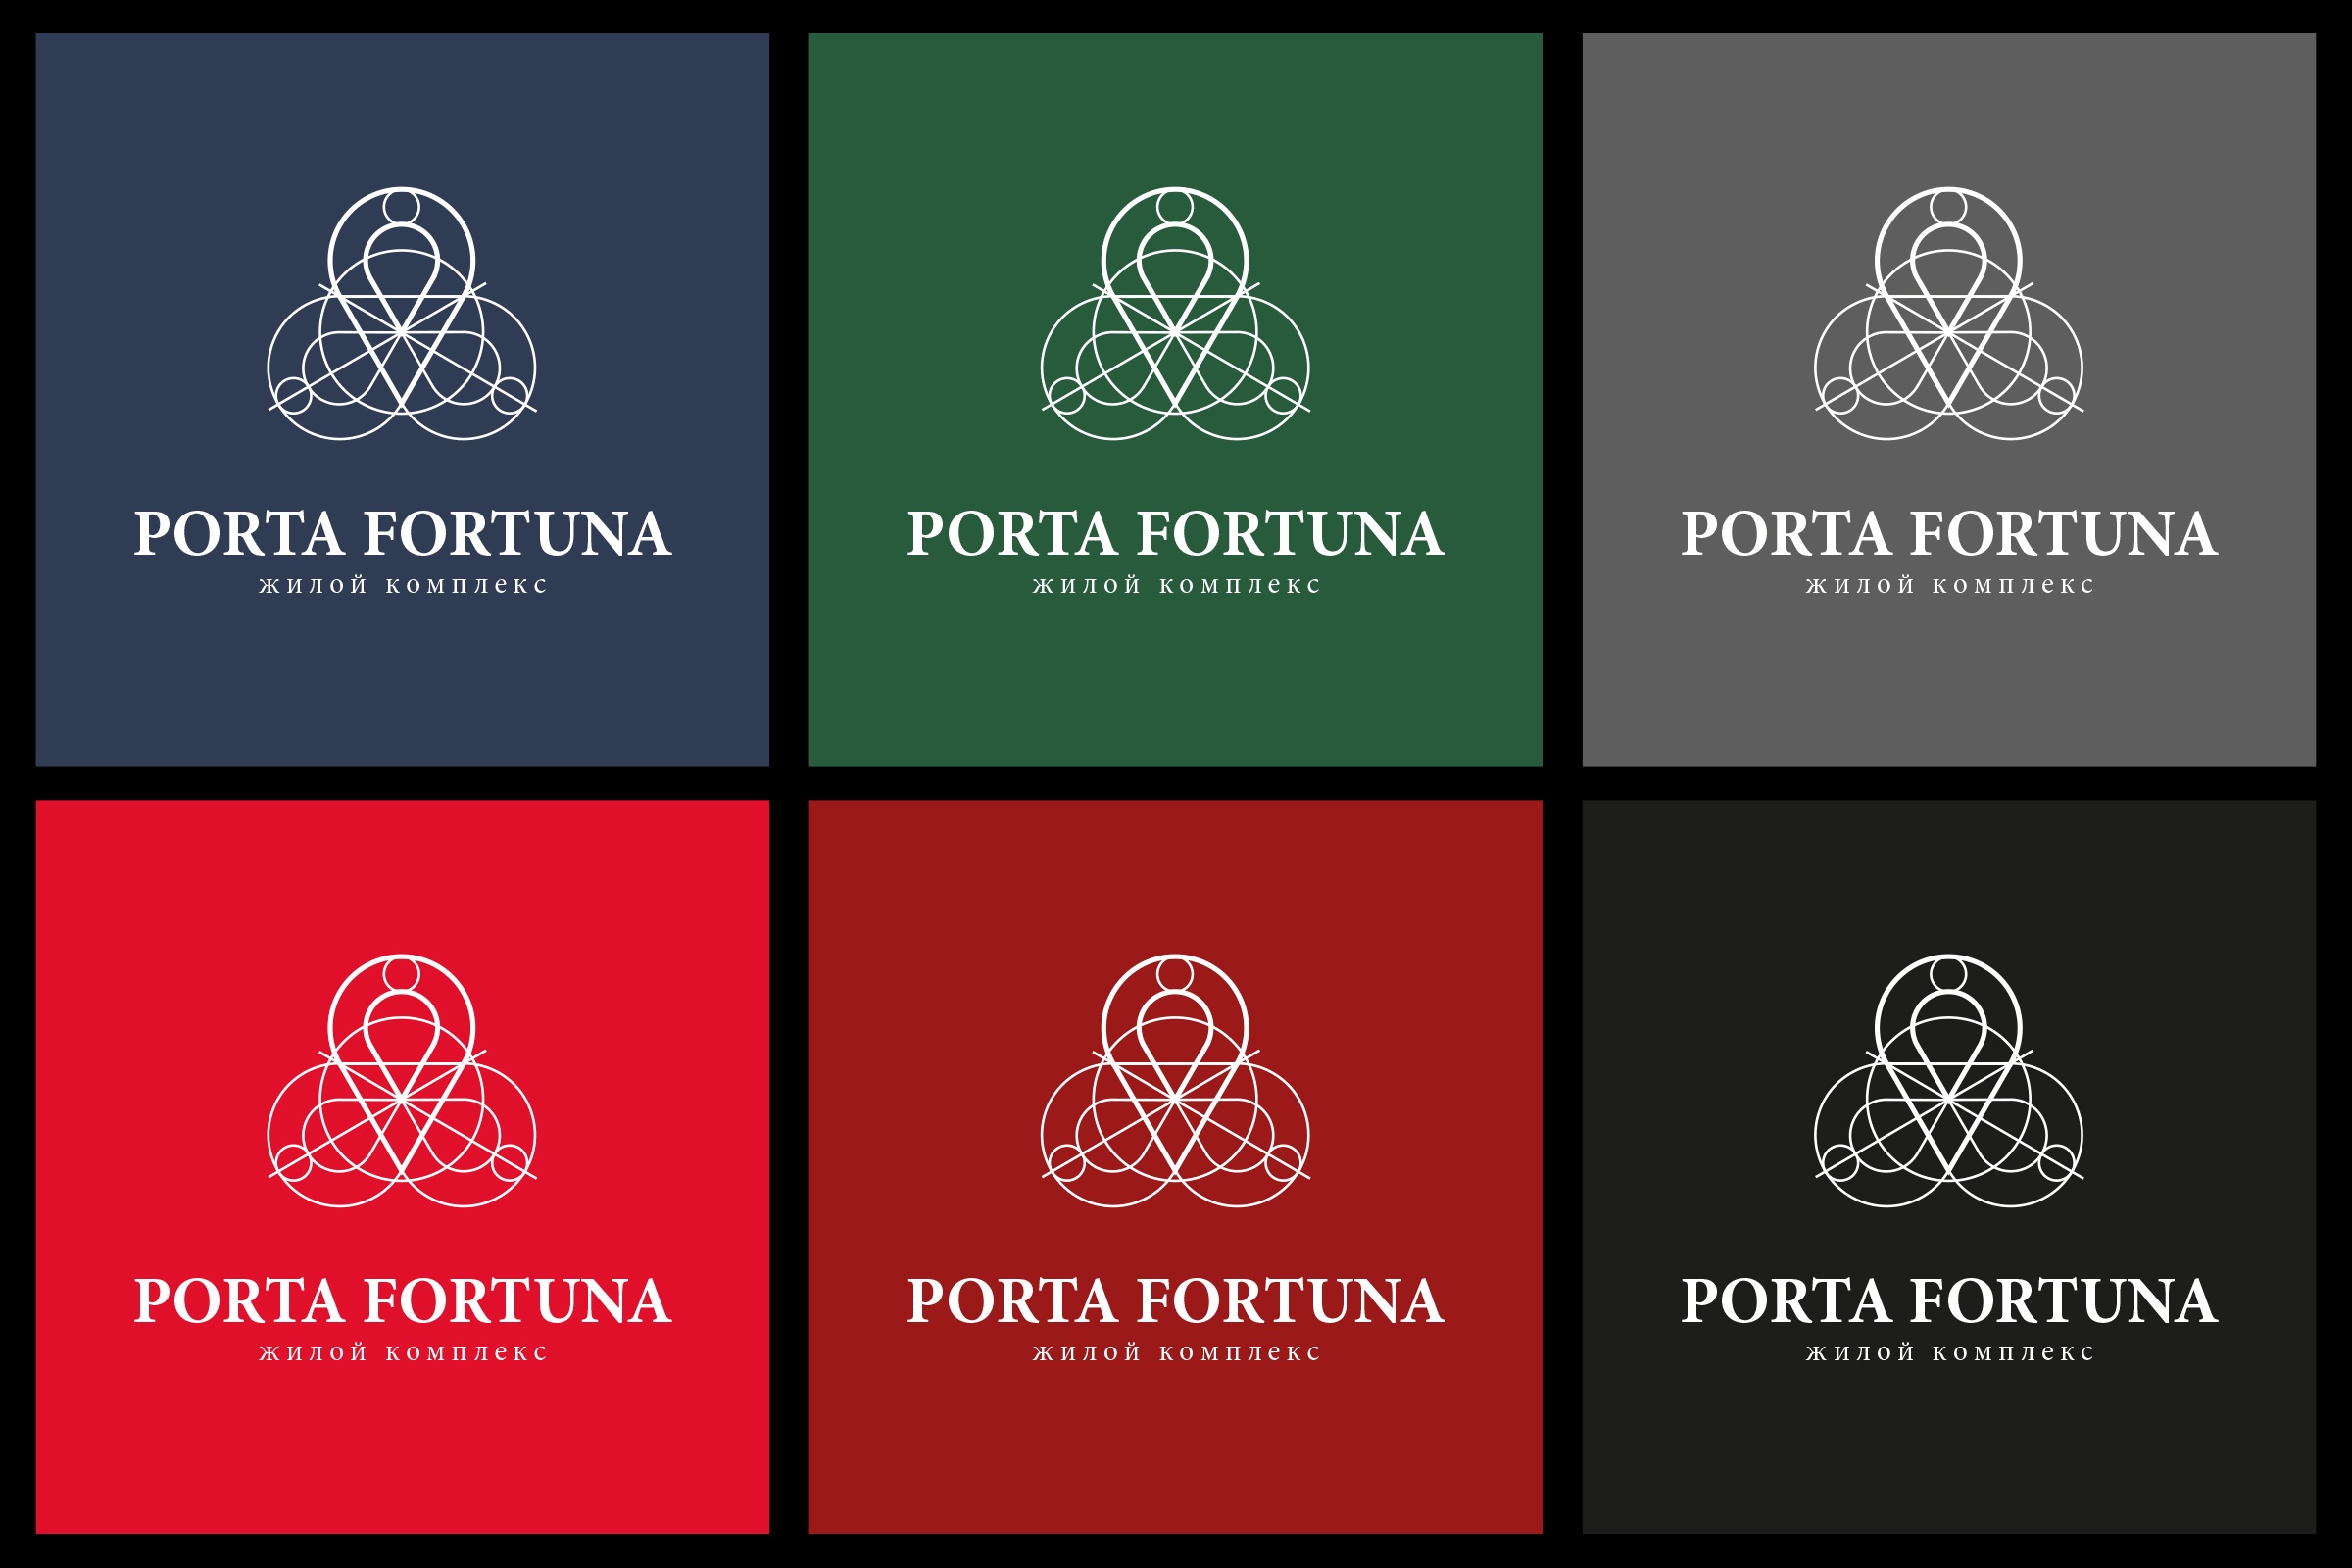 PORTA FORTUNA - image 2